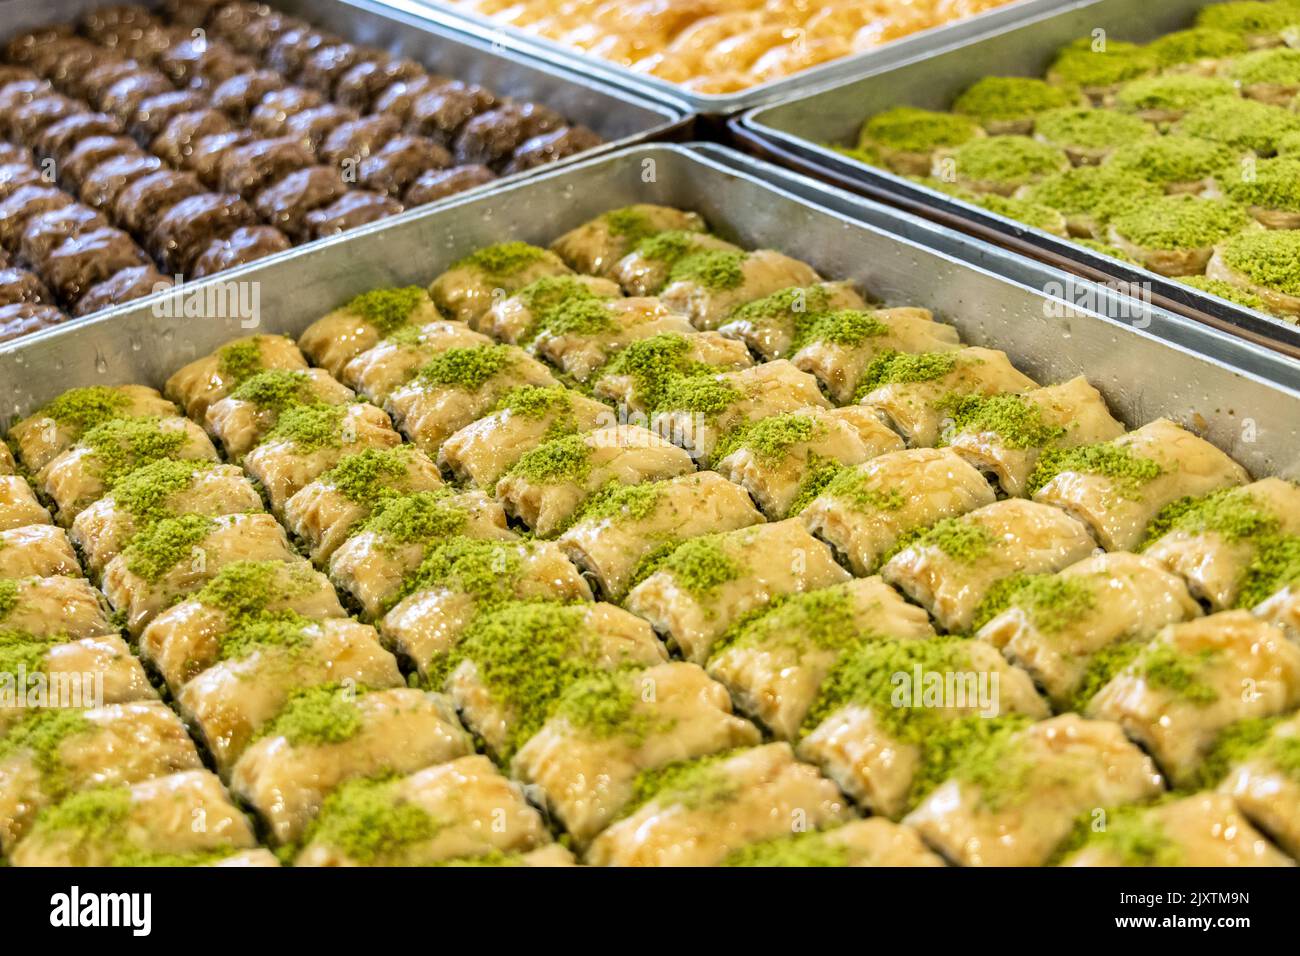 Turc et Moyen-Orient dessert, Nom local: Baklava. Desserts à la pâte de pistache dans le plateau Banque D'Images